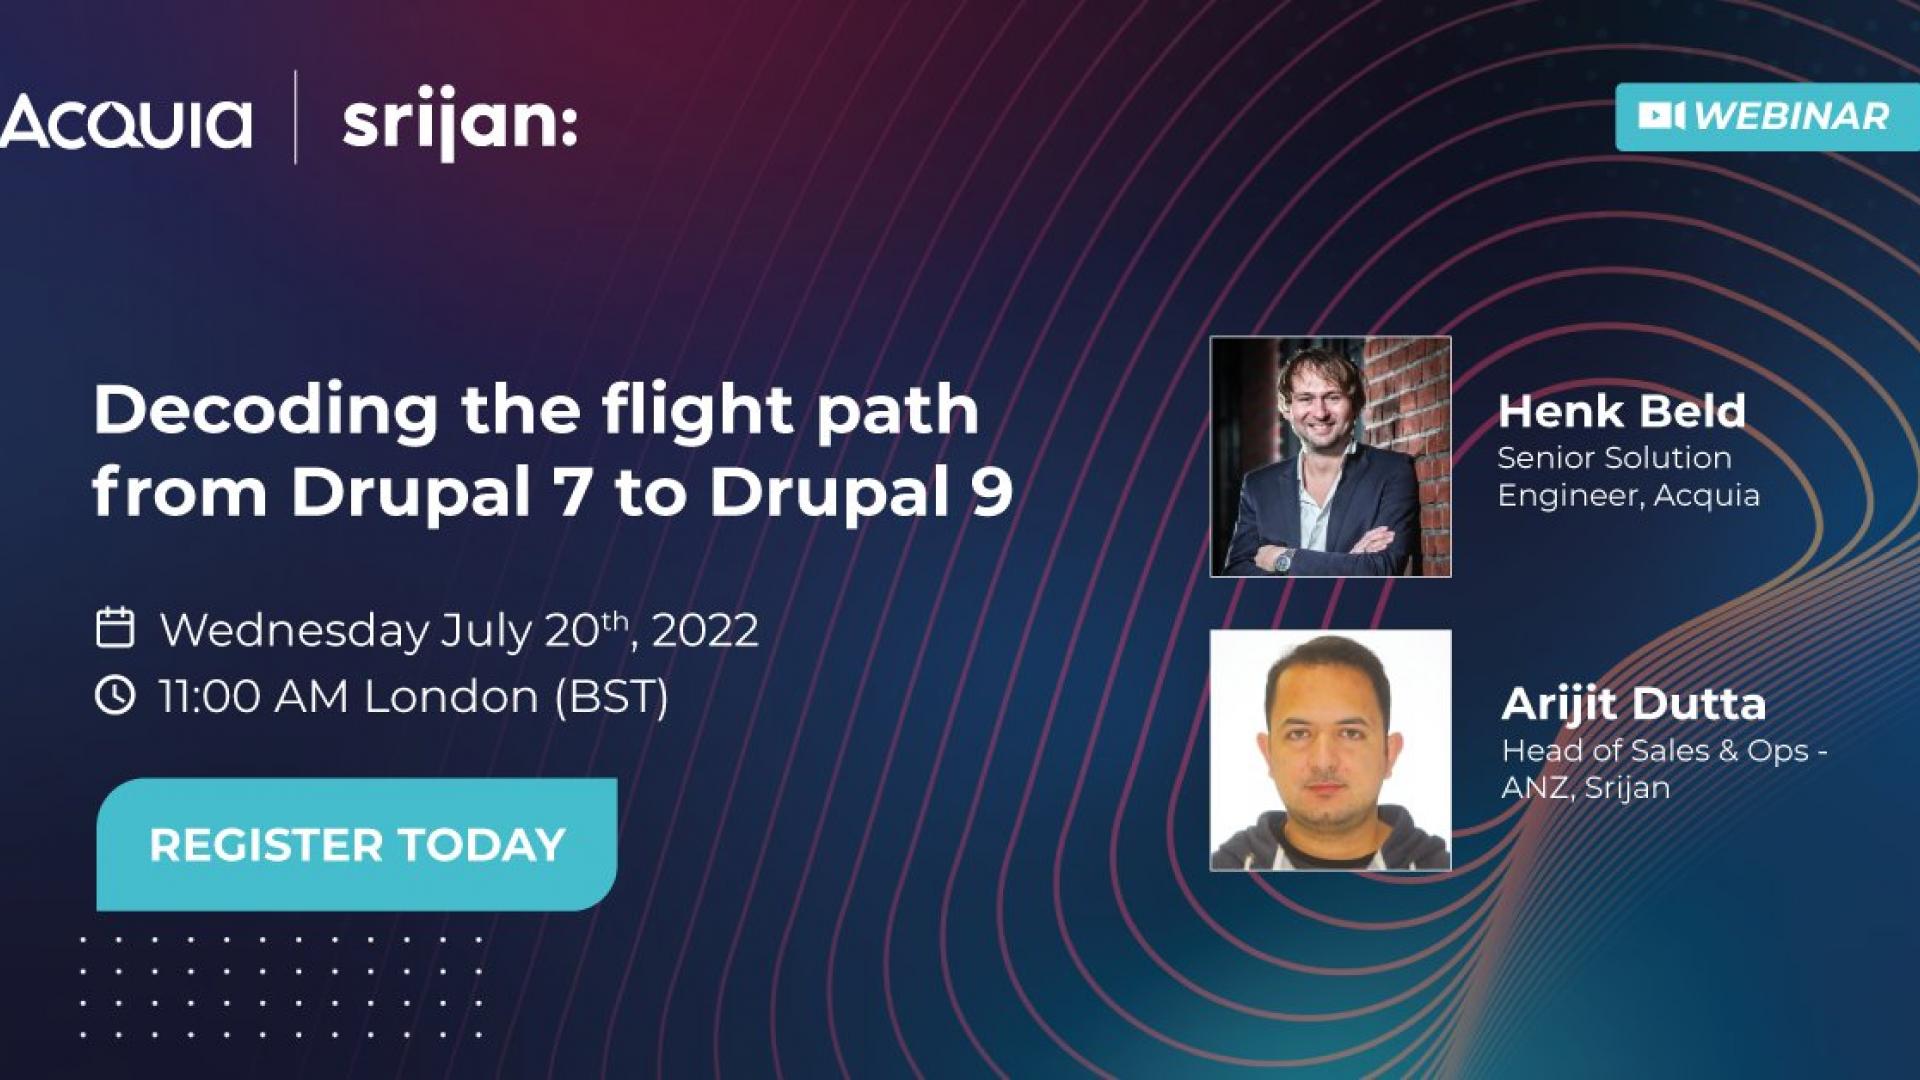 Acquia and Srijan to Host Webinar on Drupal 7 to Drupal 9 Migration